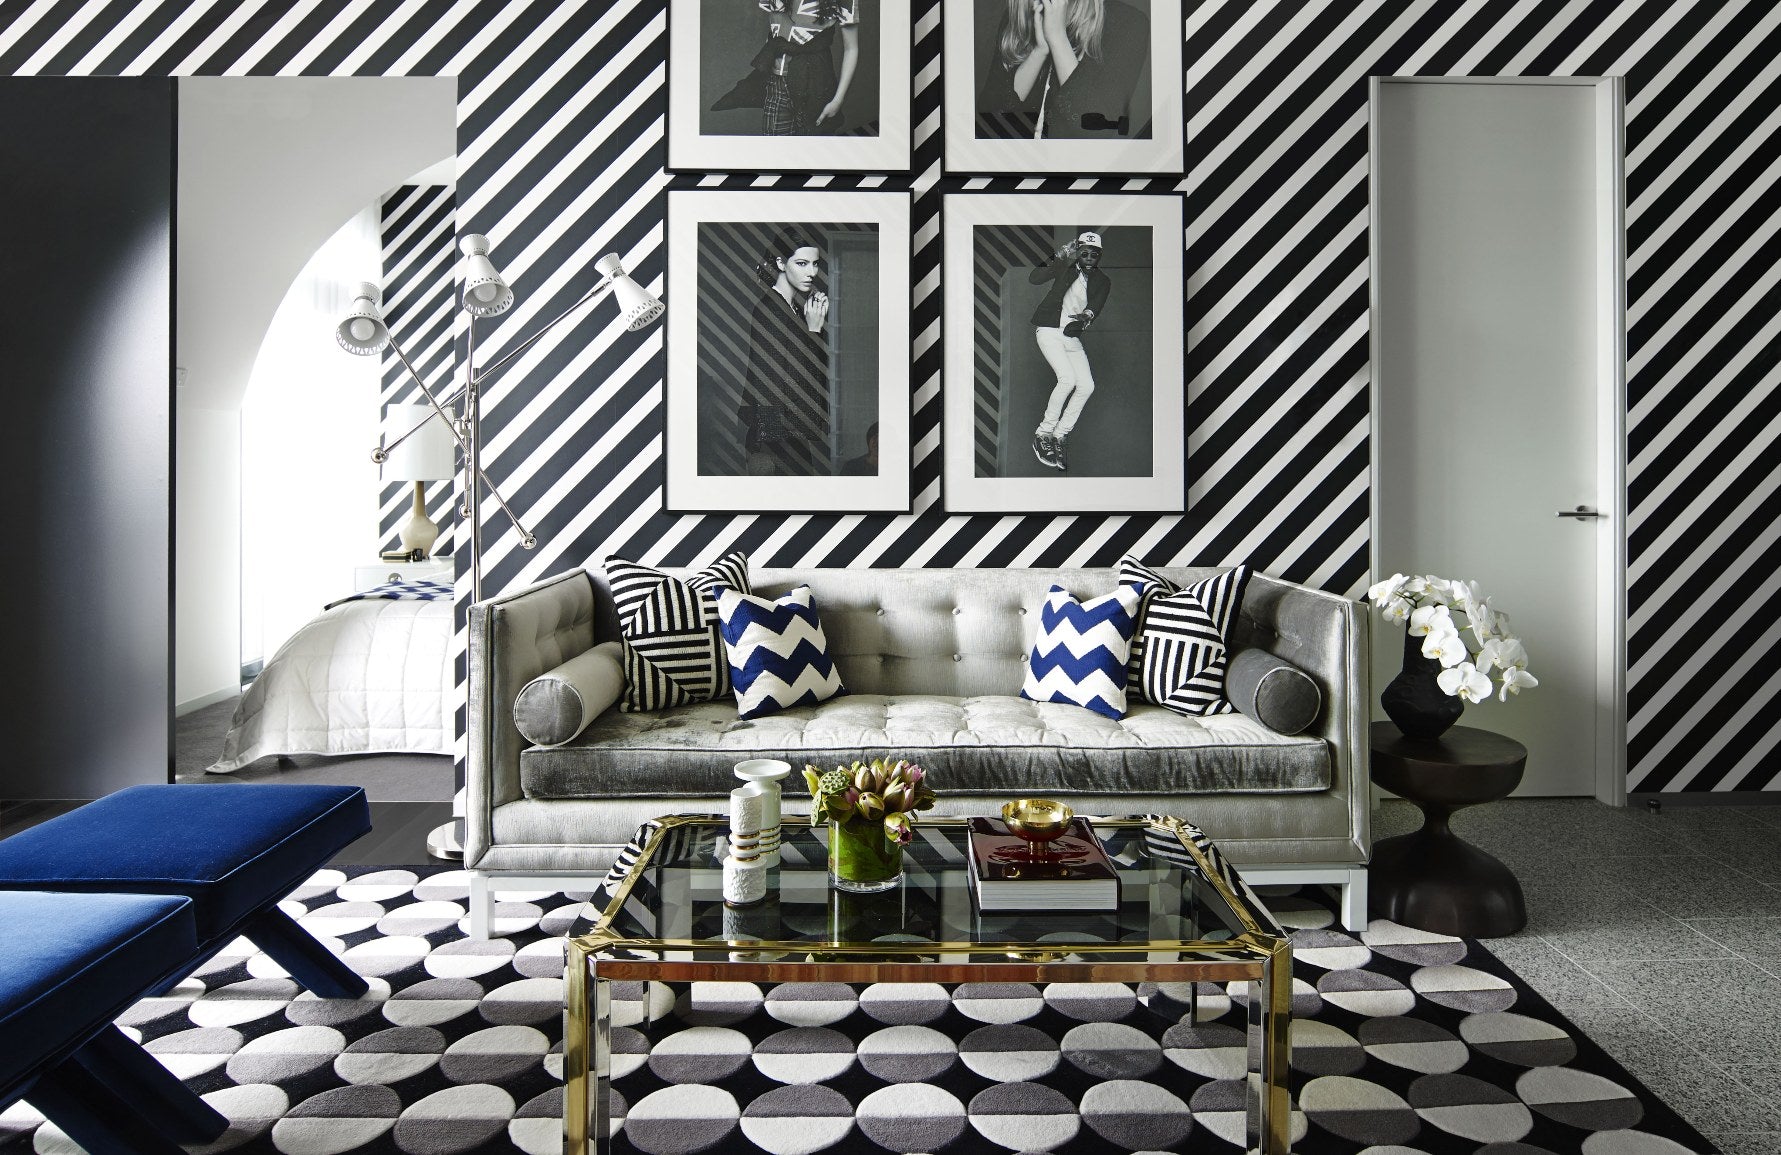 Living Room Interior Design Pictures  Download Free Images on Unsplash